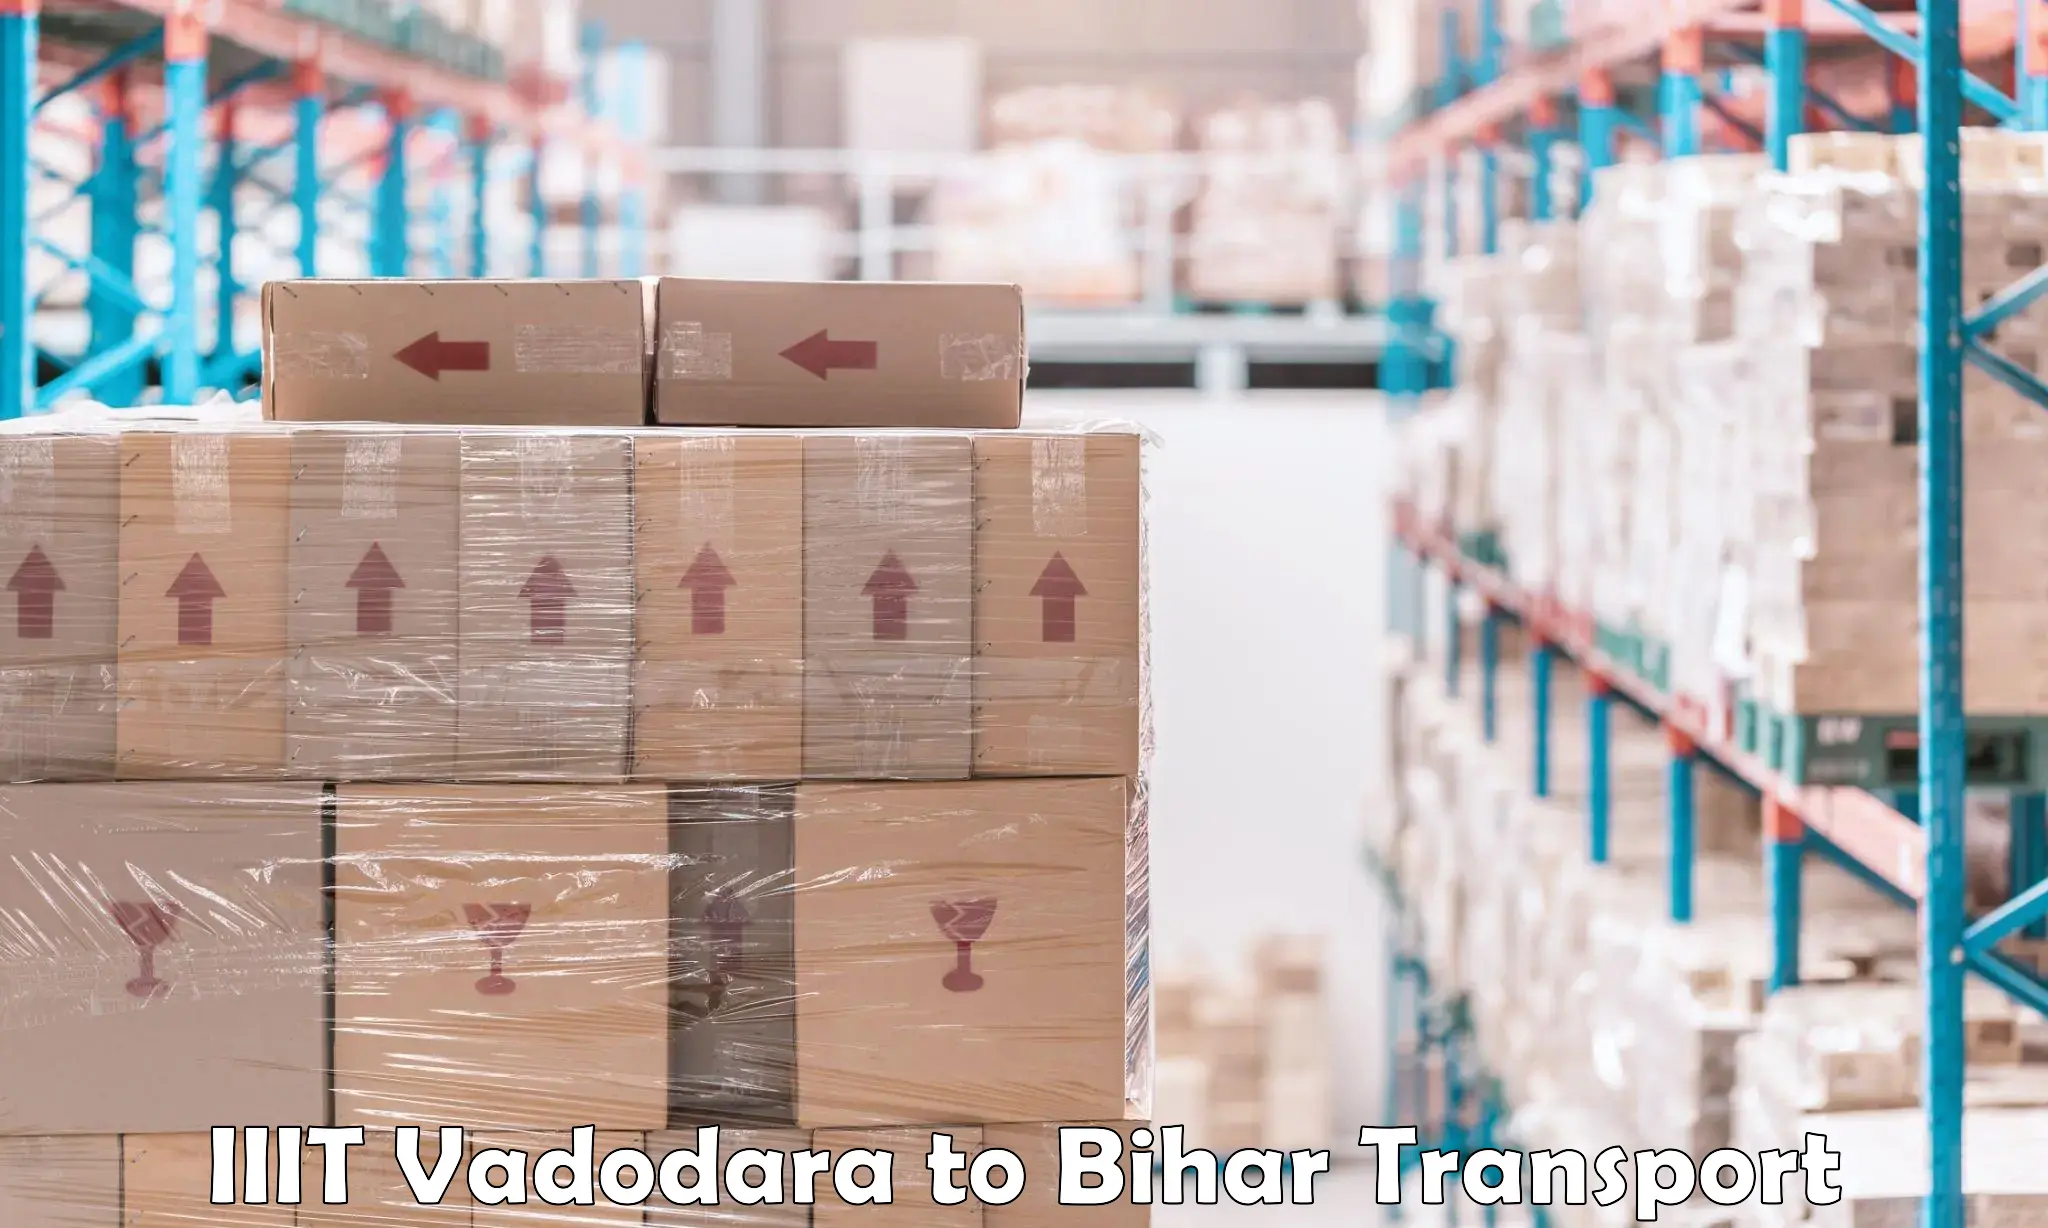 Container transport service IIIT Vadodara to Katoria